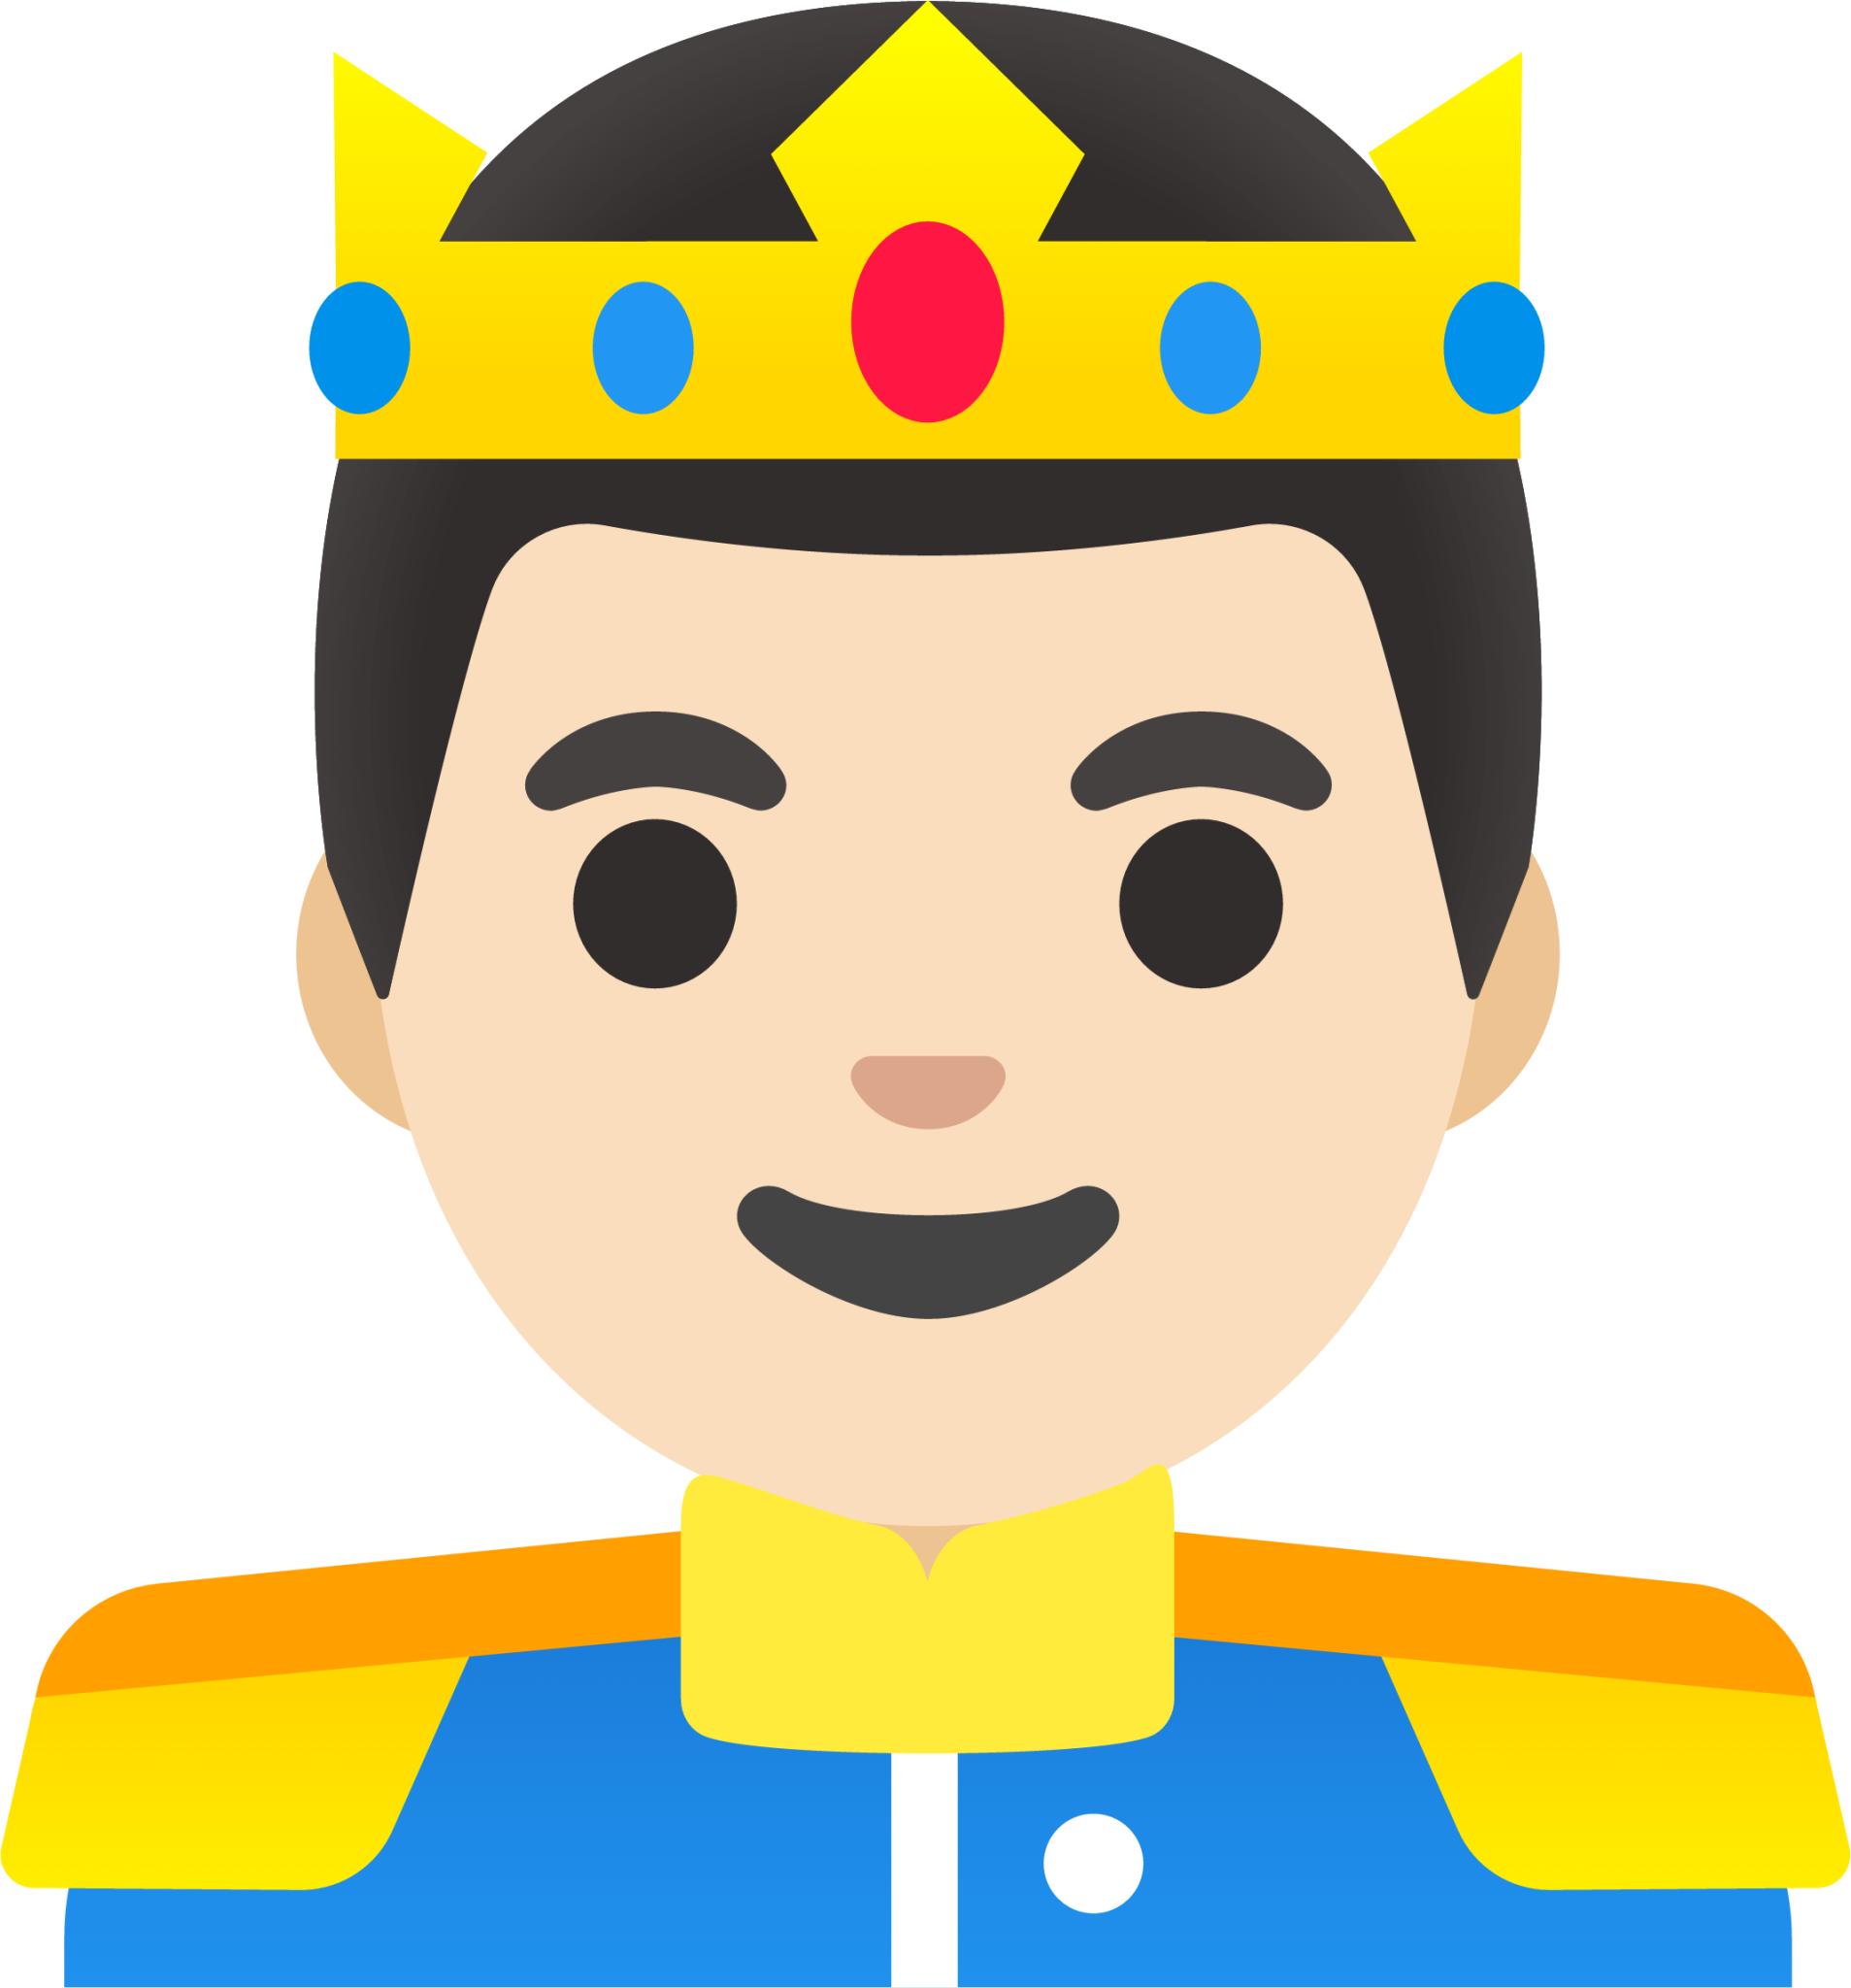 prince: light skin tone emoji